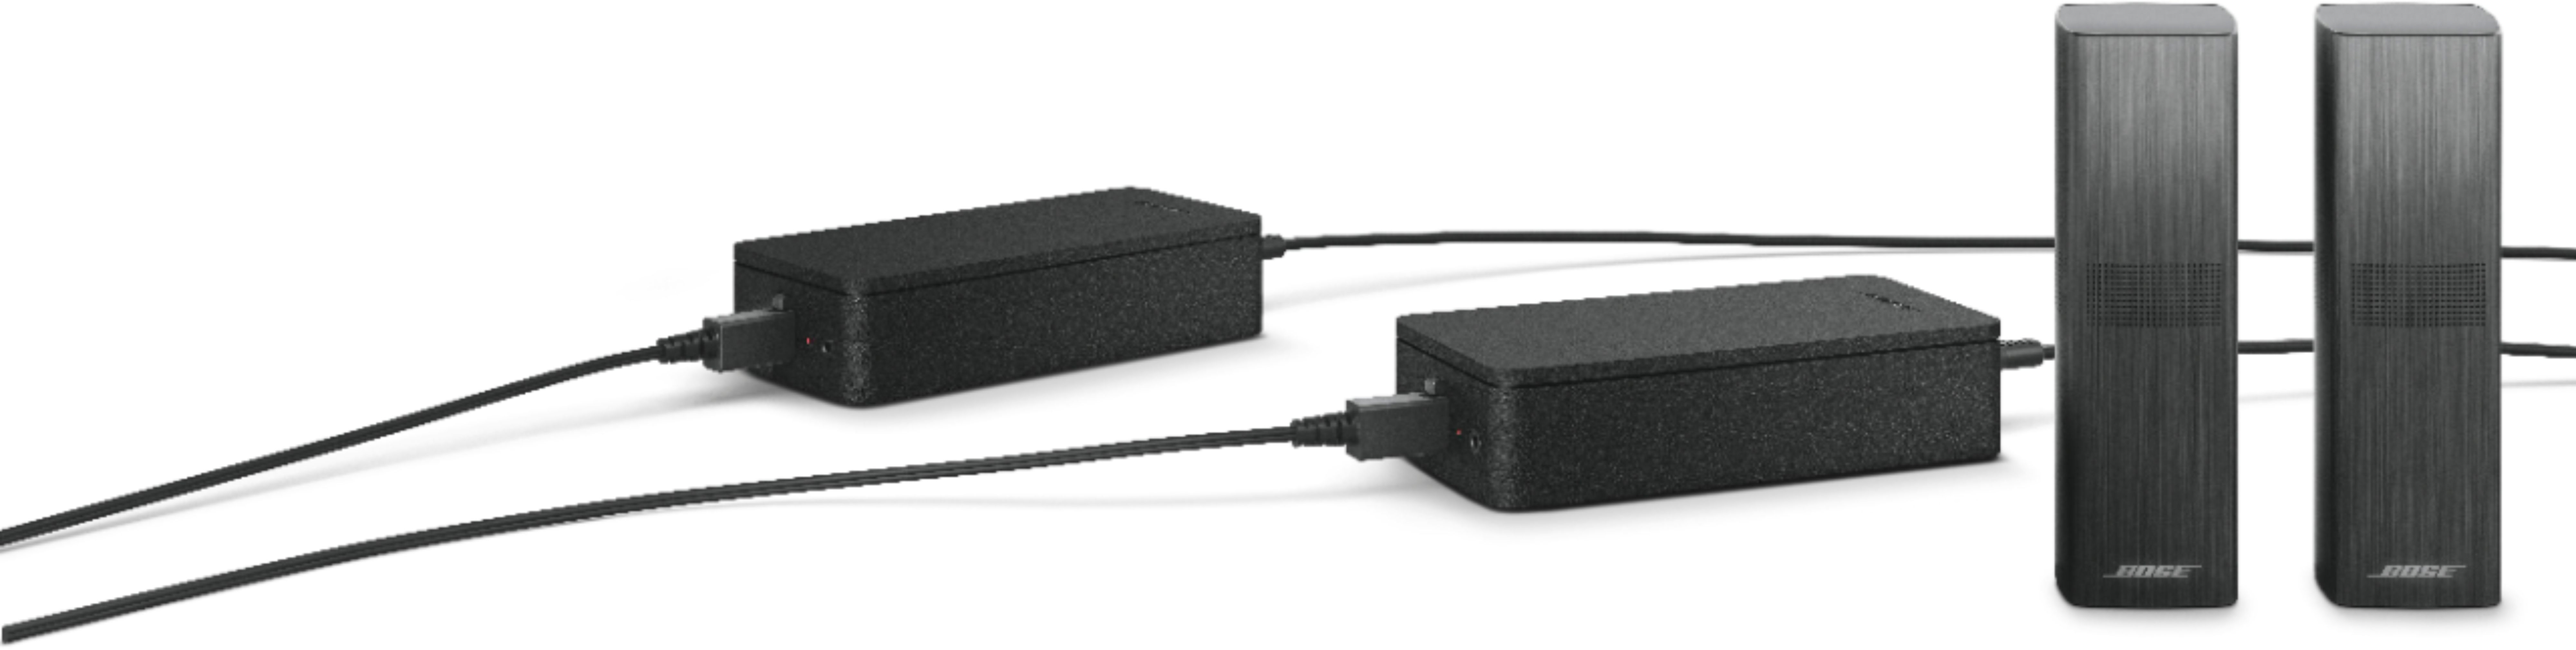 længes efter Åbent Woods Best Buy: Bose Soundbar 700 Smart Speaker Surround Speaker Bundle Black  852322-1100